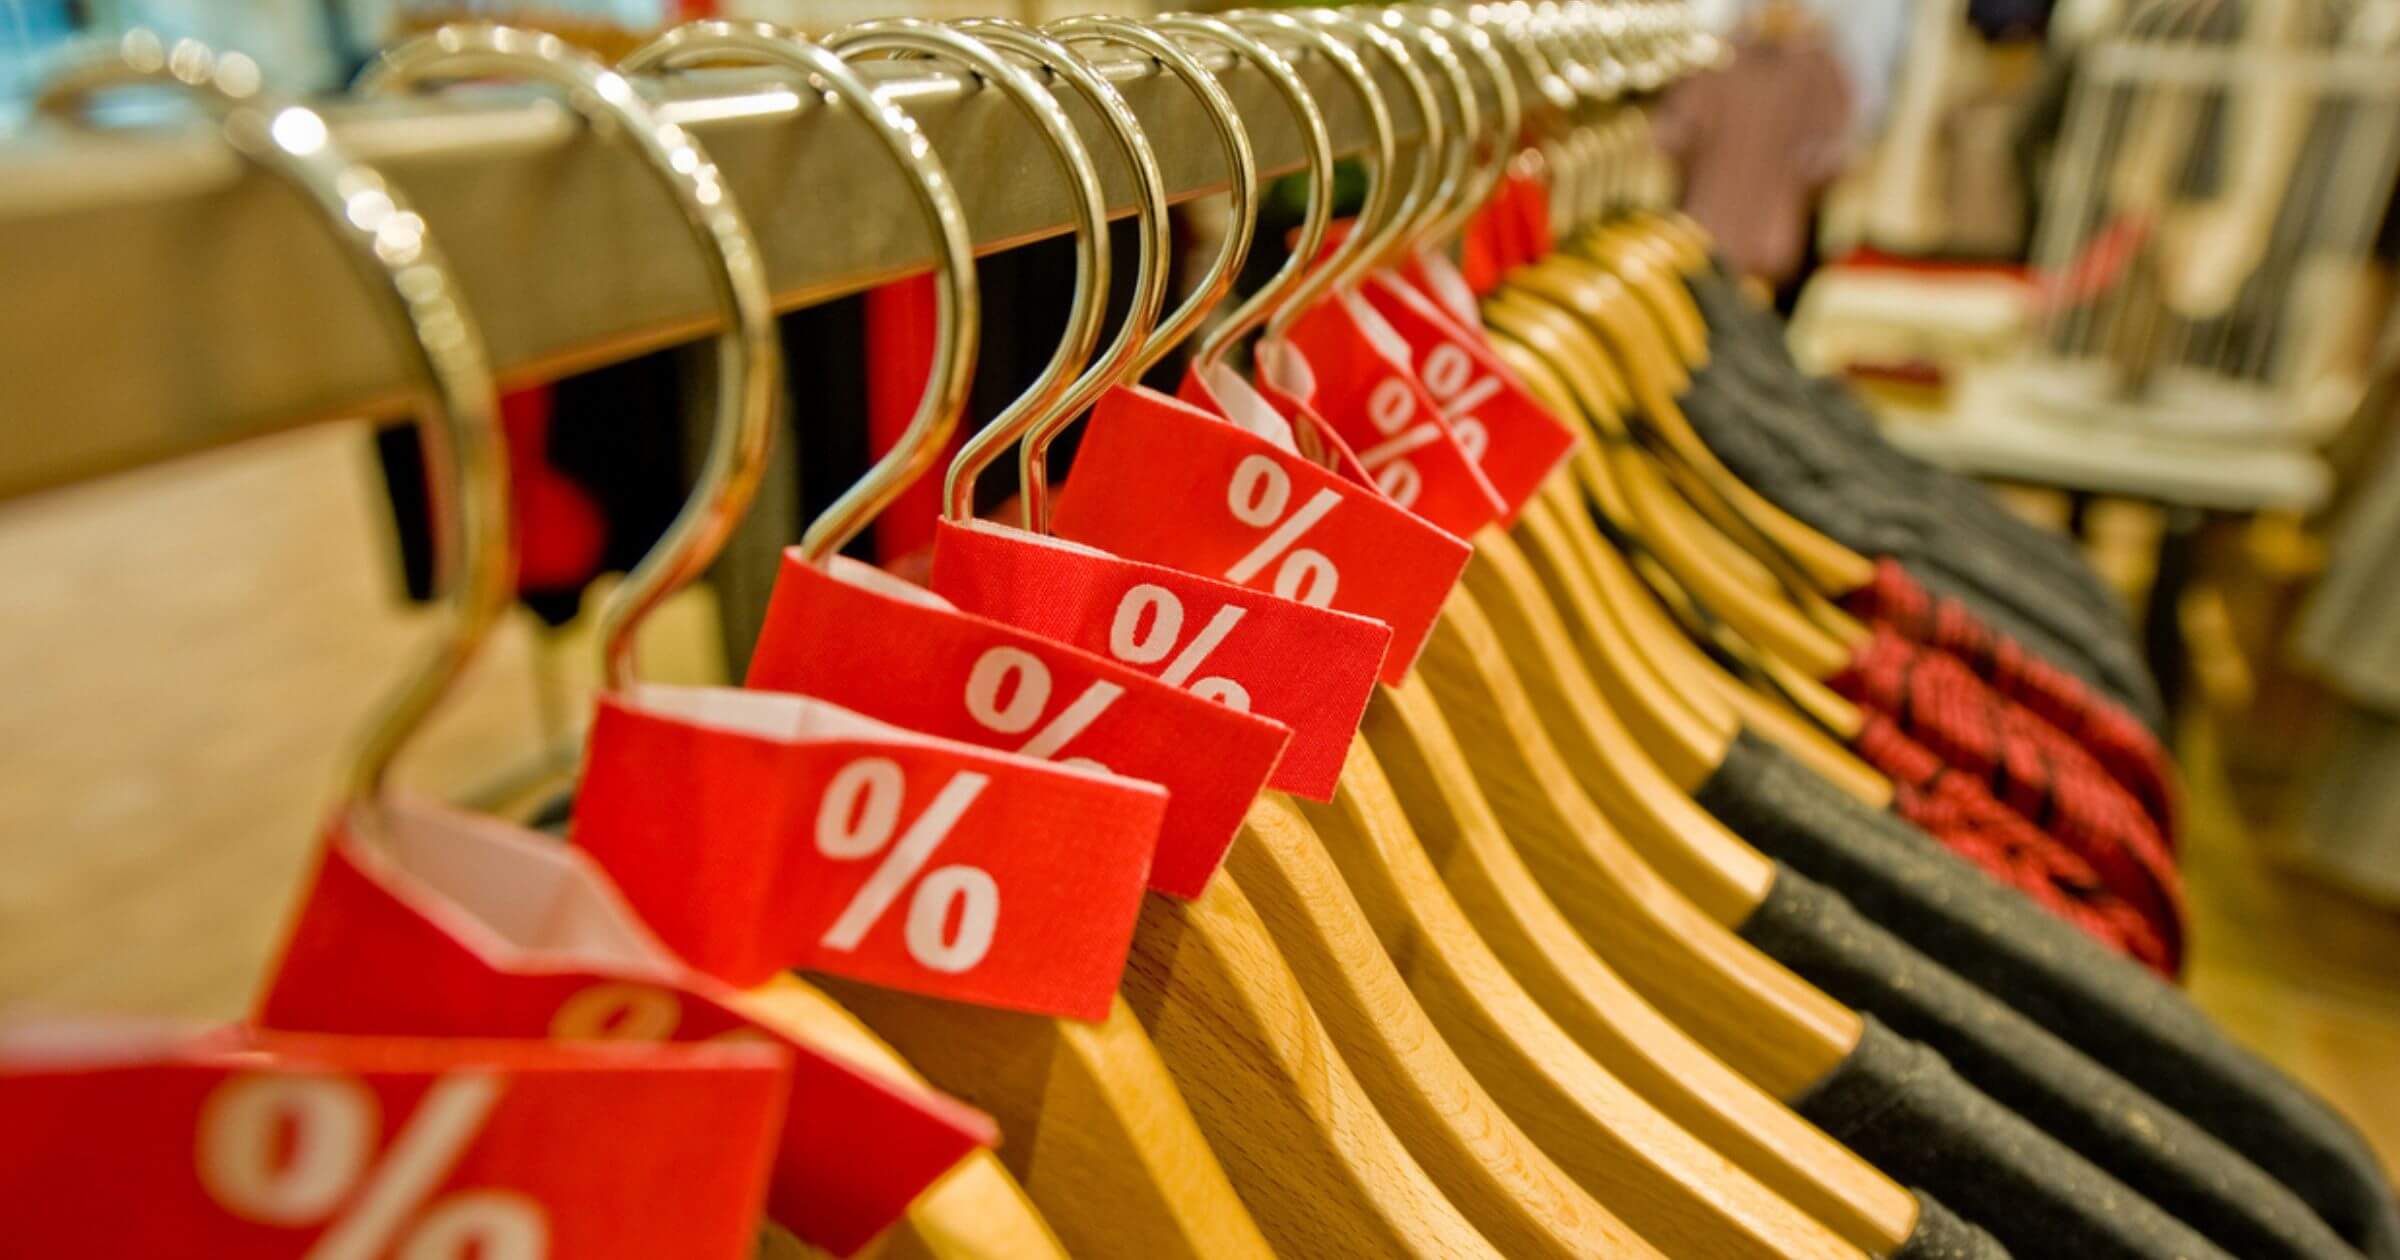 Clothes sales